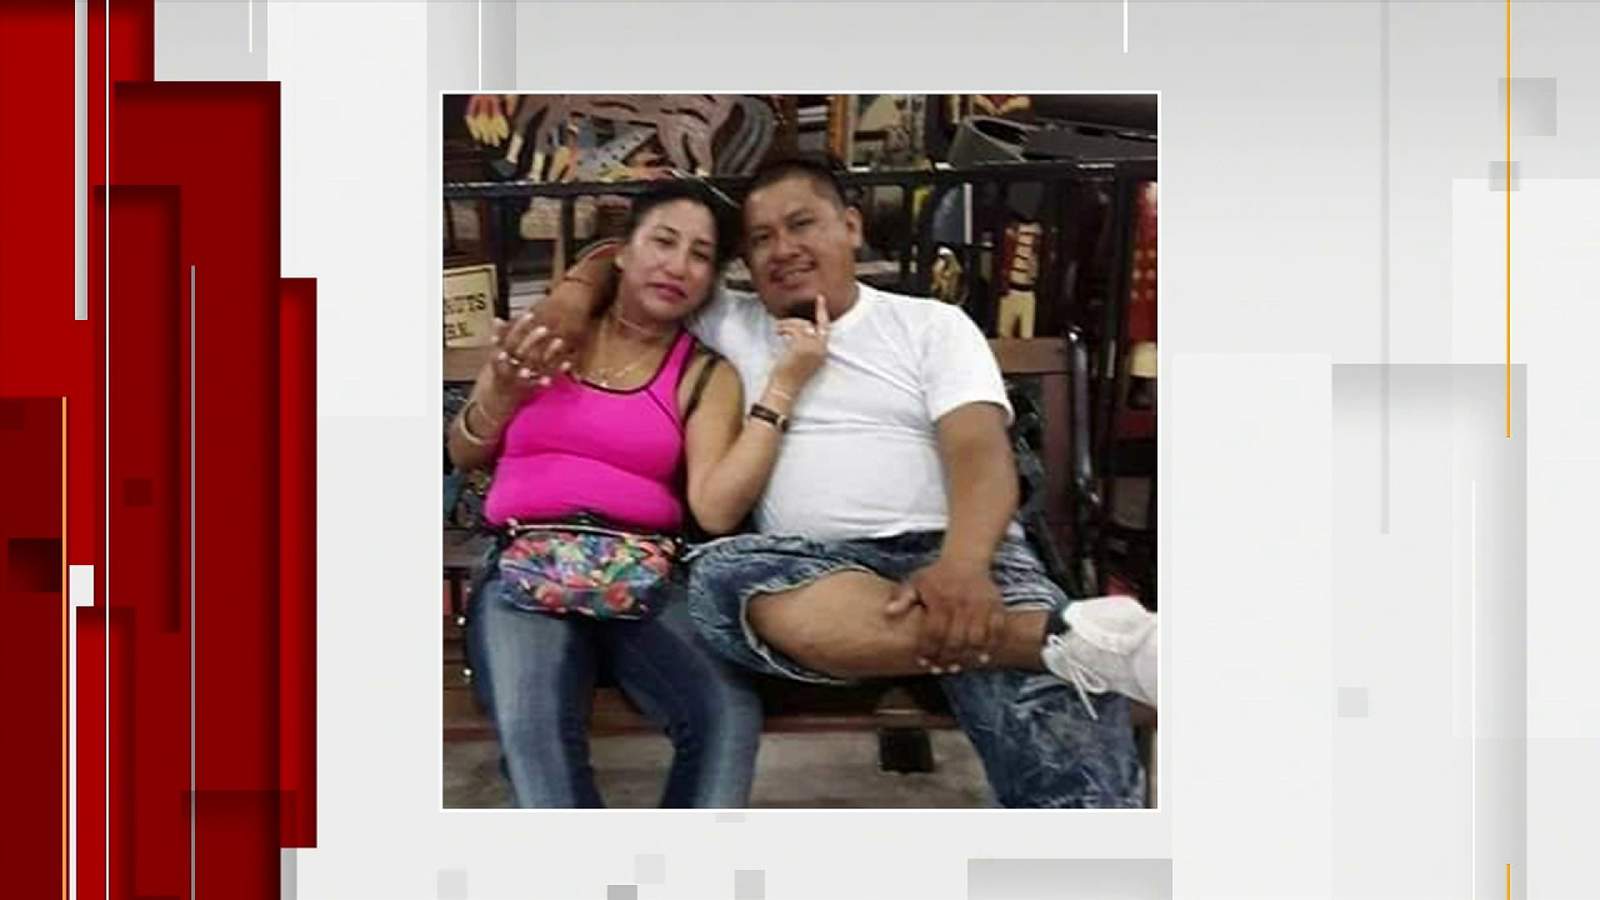 Francisca Baten Ramirez pictured with her boyfriend, Raul Santos, who was fatally shot Feb. 9, 2020. 